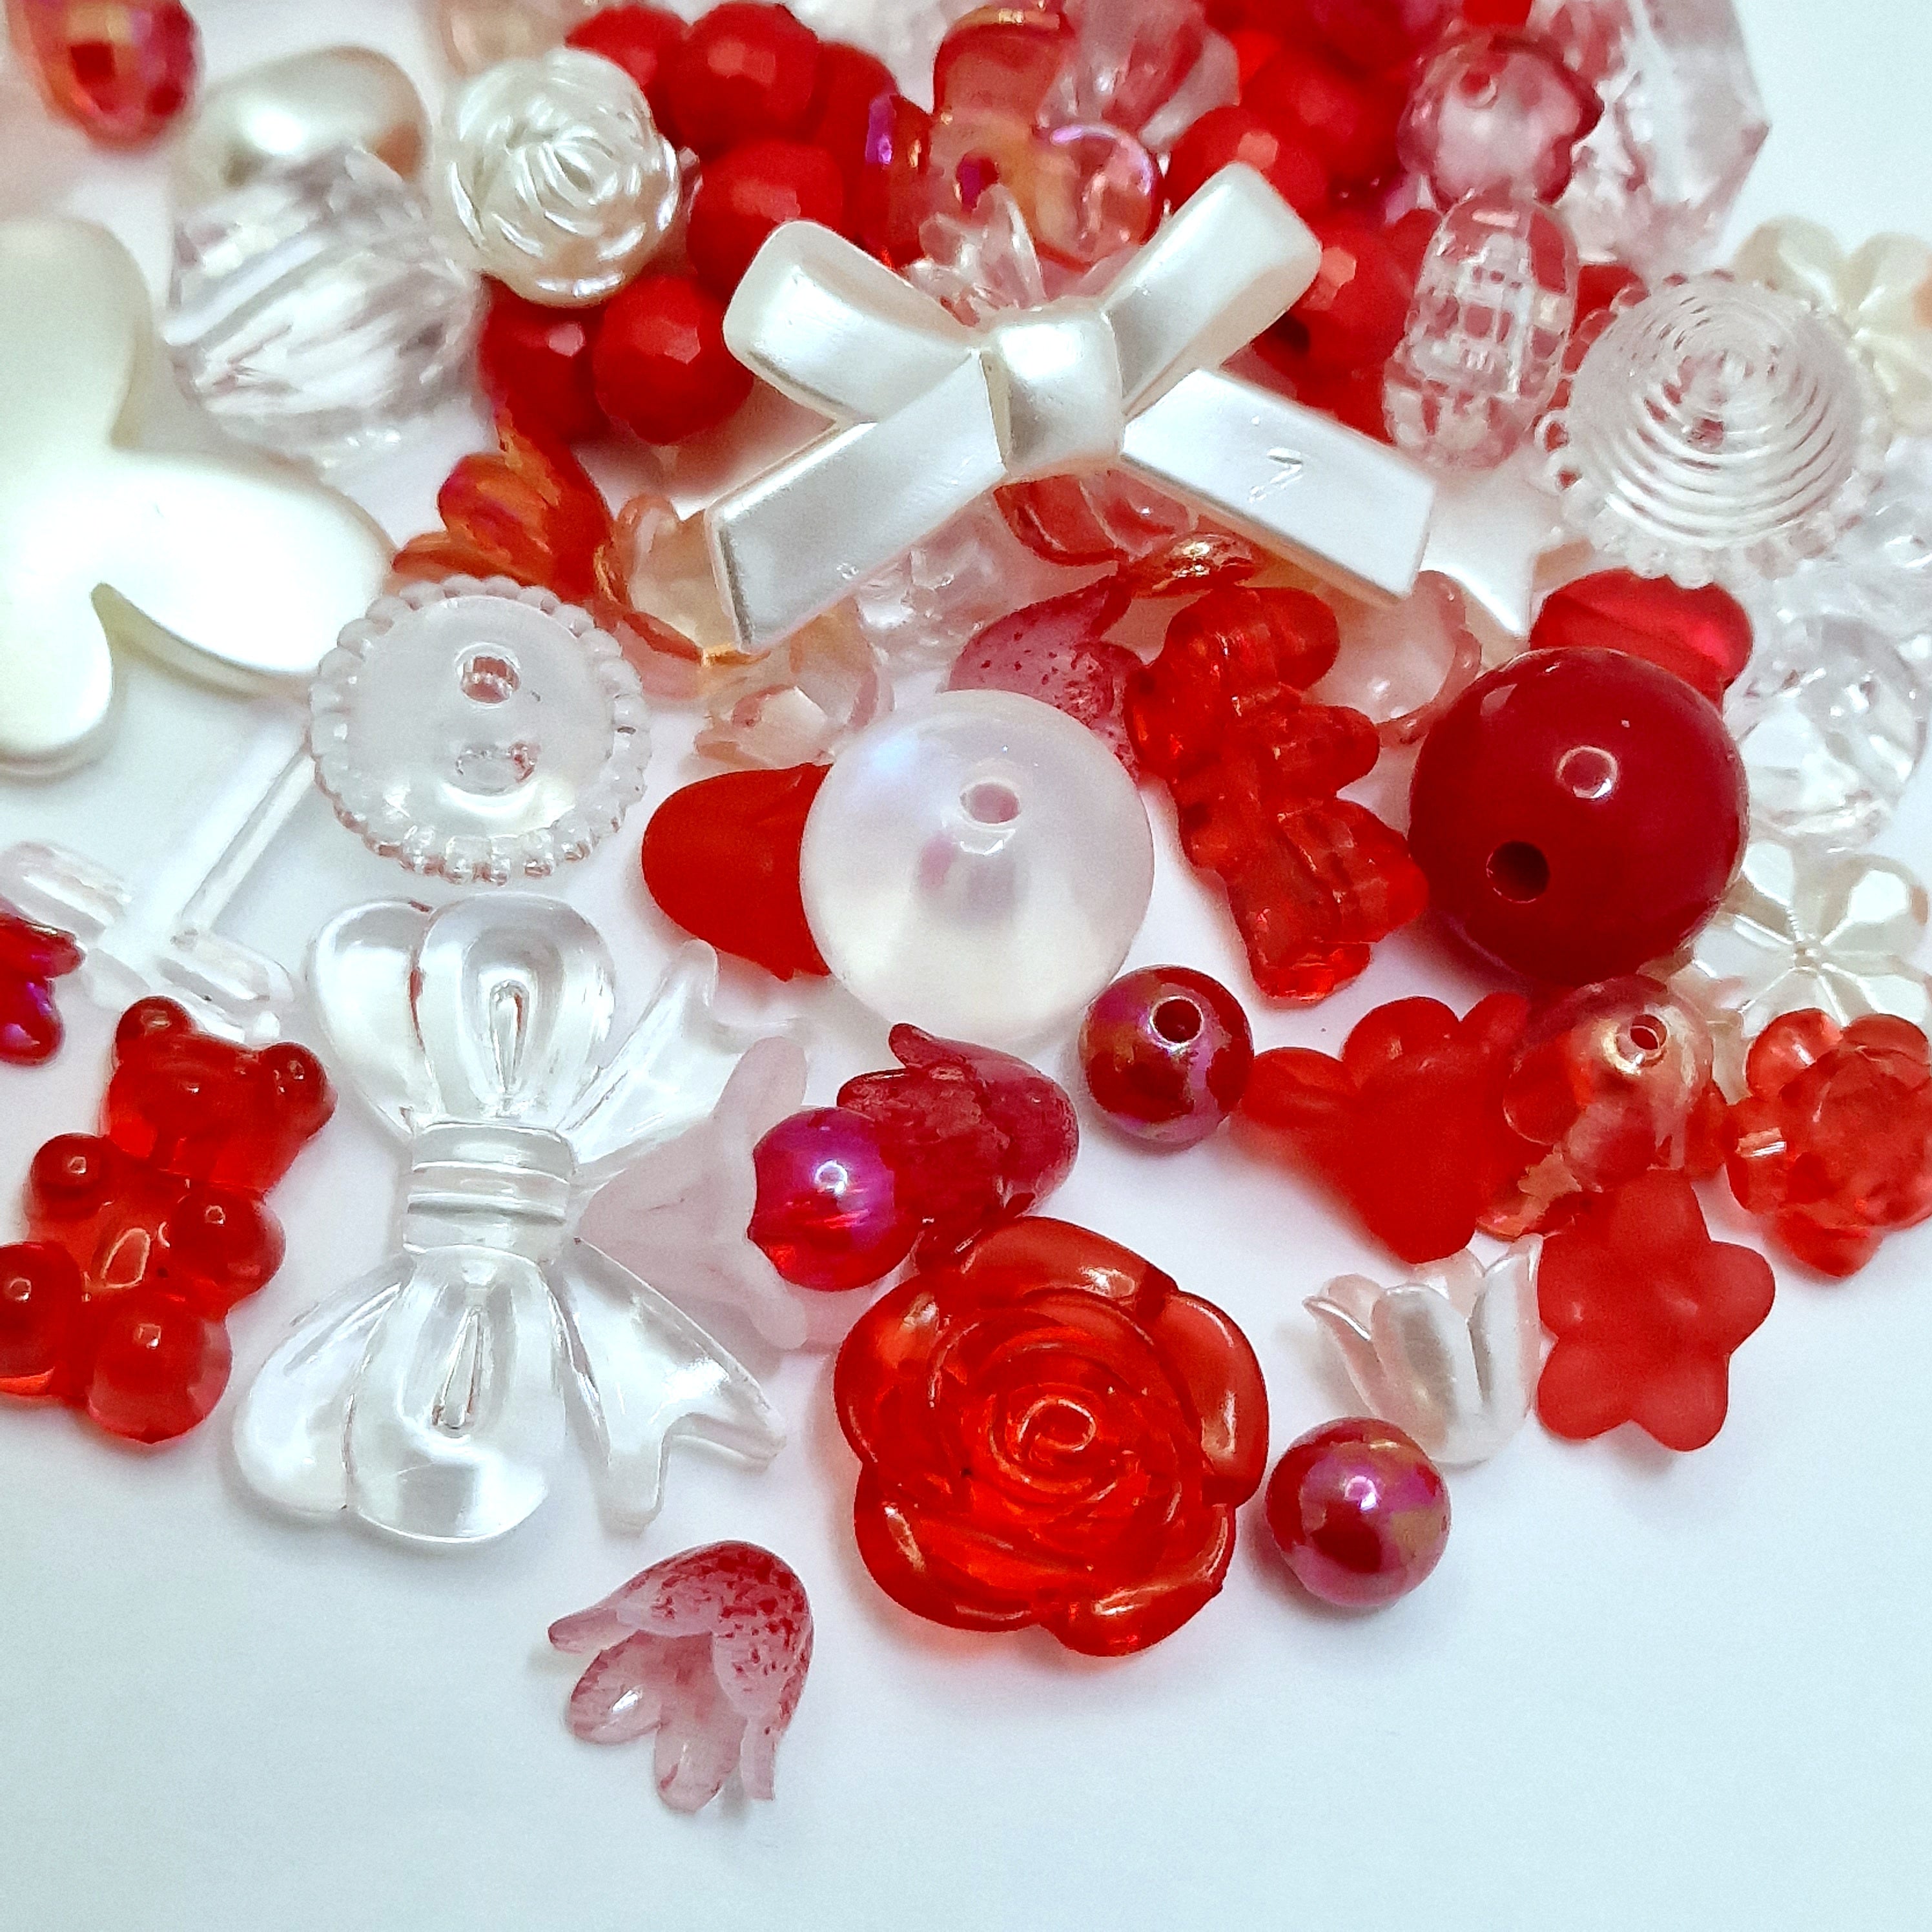 MajorCrafts 50g Red Theme Mixed Shapes & Sizes Acrylic Beads